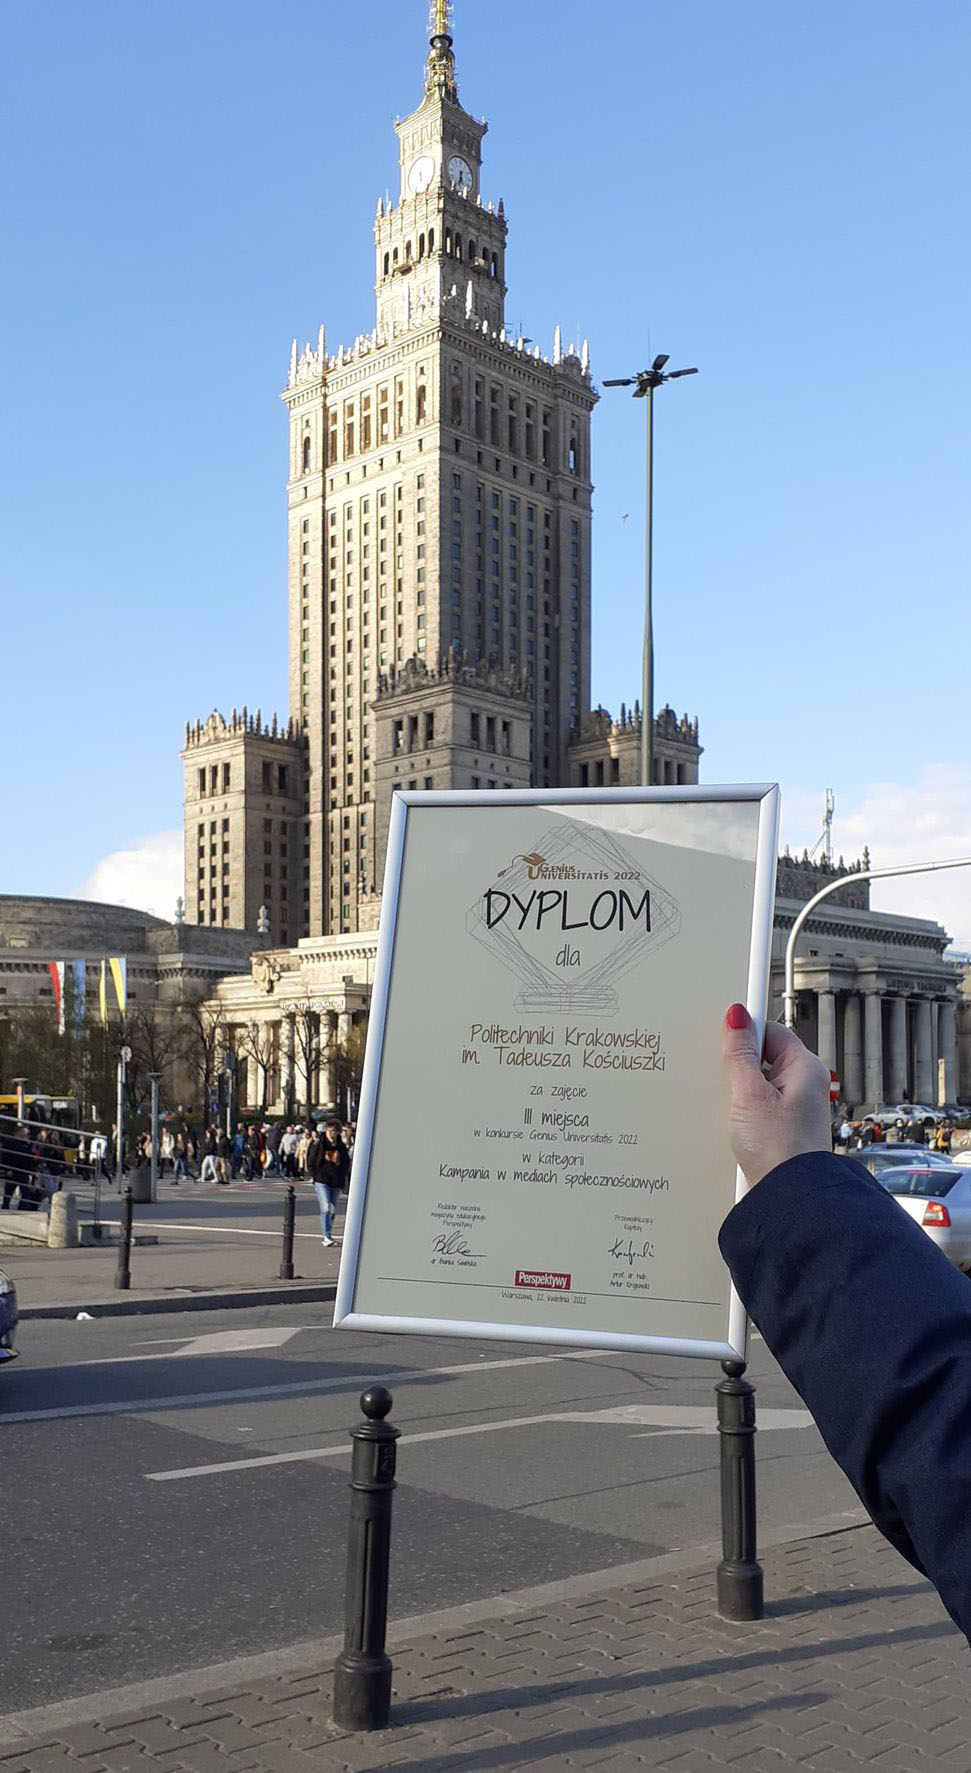 Dyplom dla PK sfotografowany na tle Pałacu Kultury i Nauki w Warszawie